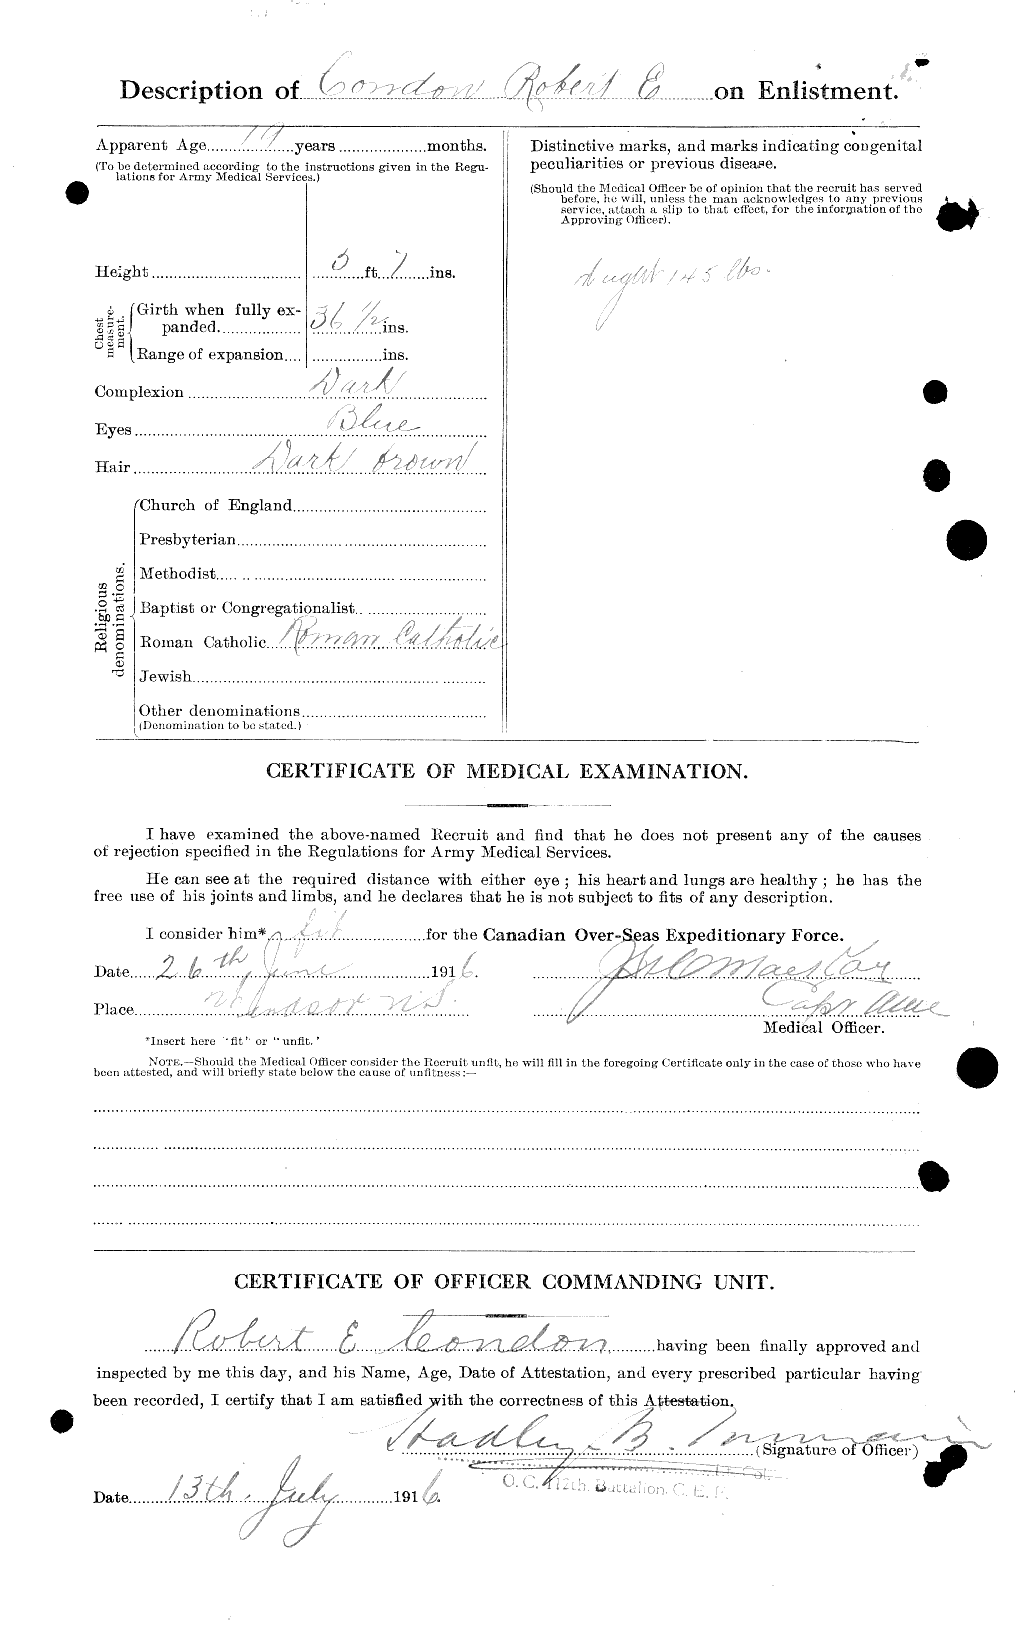 Dossiers du Personnel de la Première Guerre mondiale - CEC 041037b